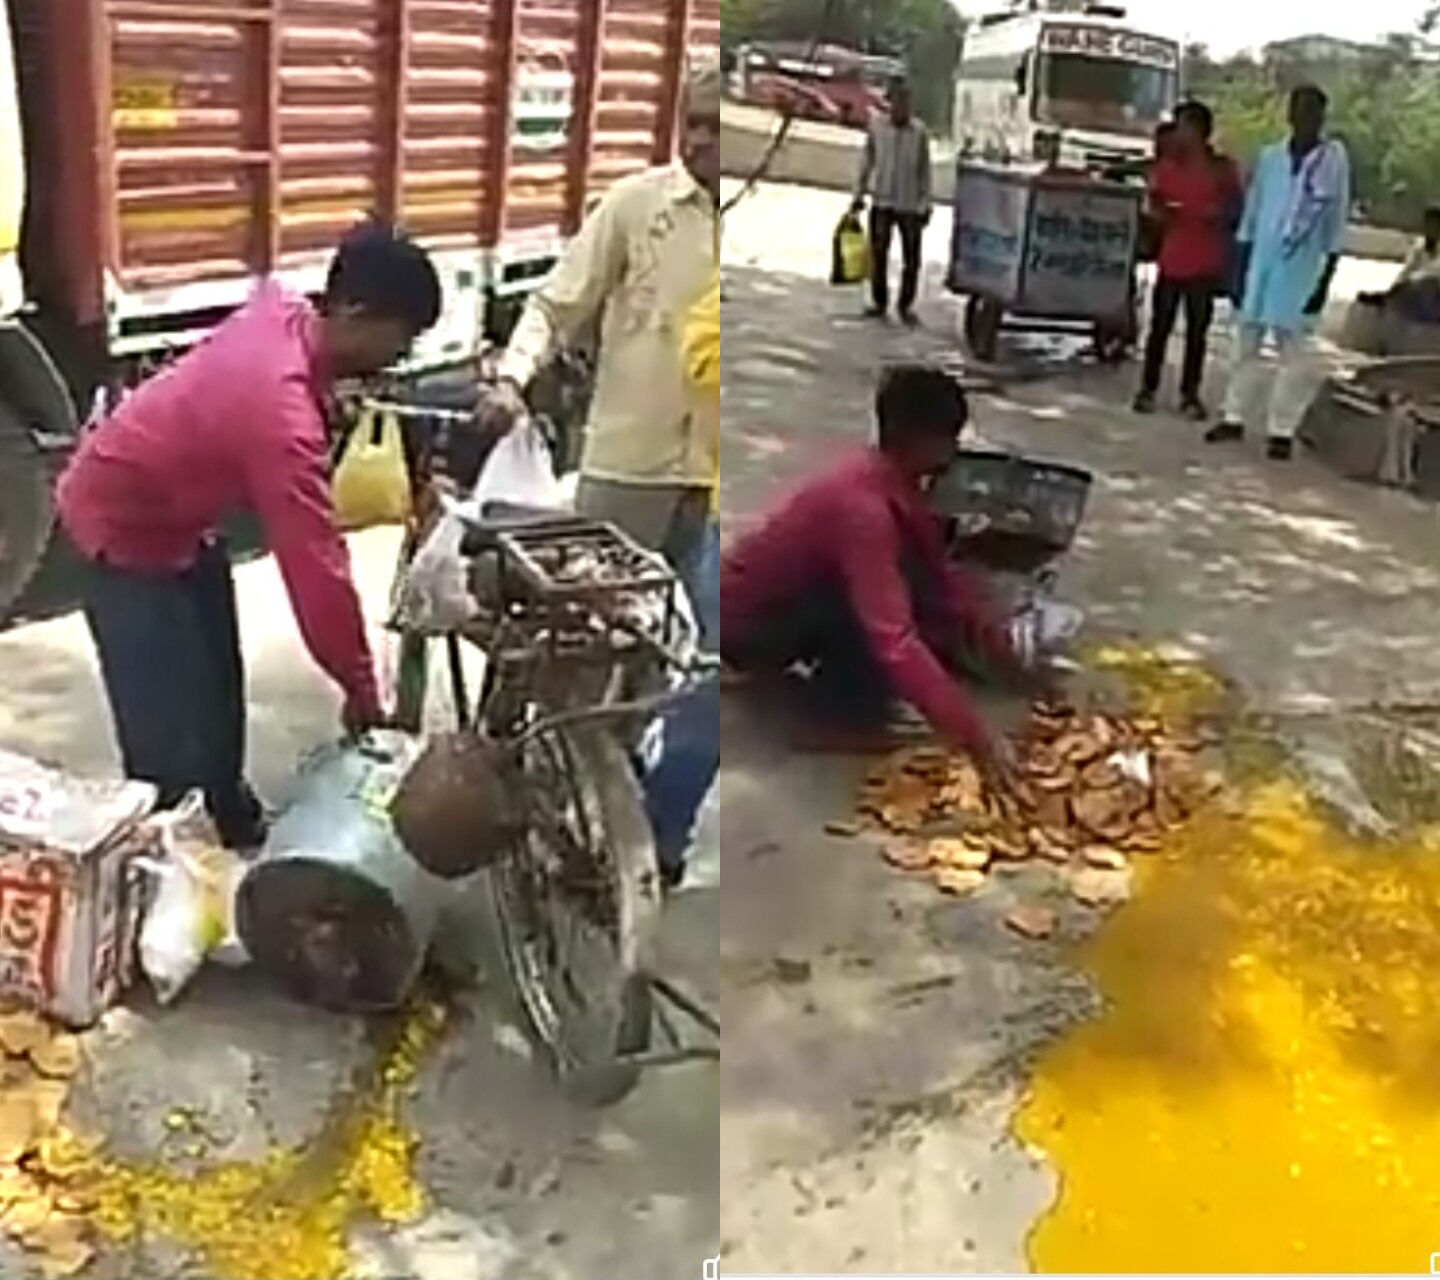 दिल्ली में एमसीडी अधिकारी ने पलटी गरीब की रेहड़ी, जनता बोली पकौड़े बेंचना रोजगार कचौड़ी नहीं